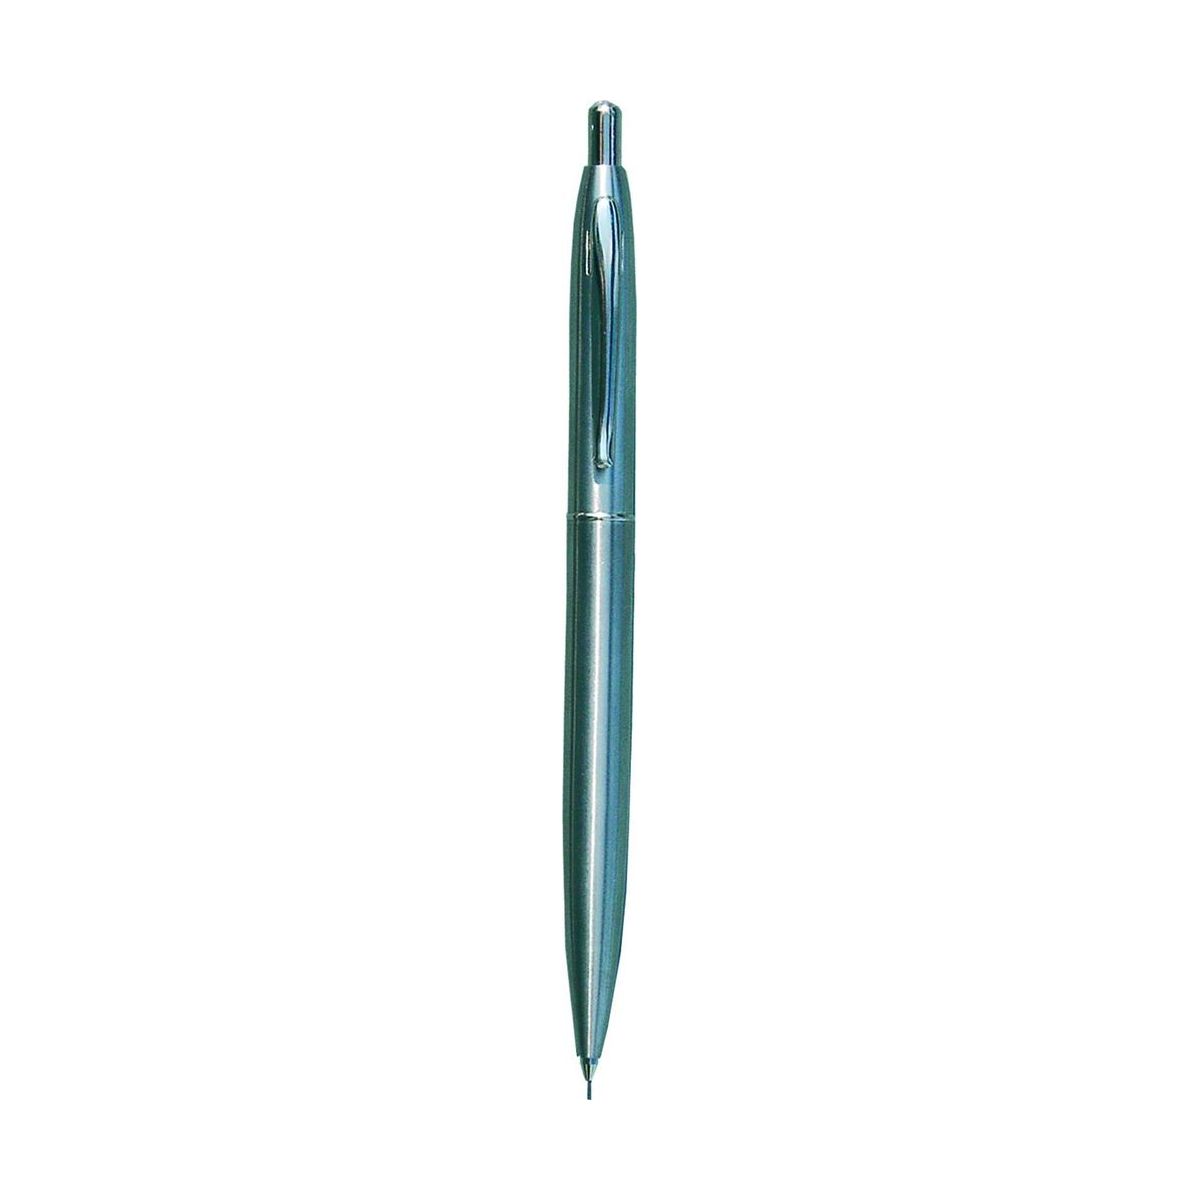 Ekskluzywny ołówek automatyczny Titanum metalowy (MB9104 MG)